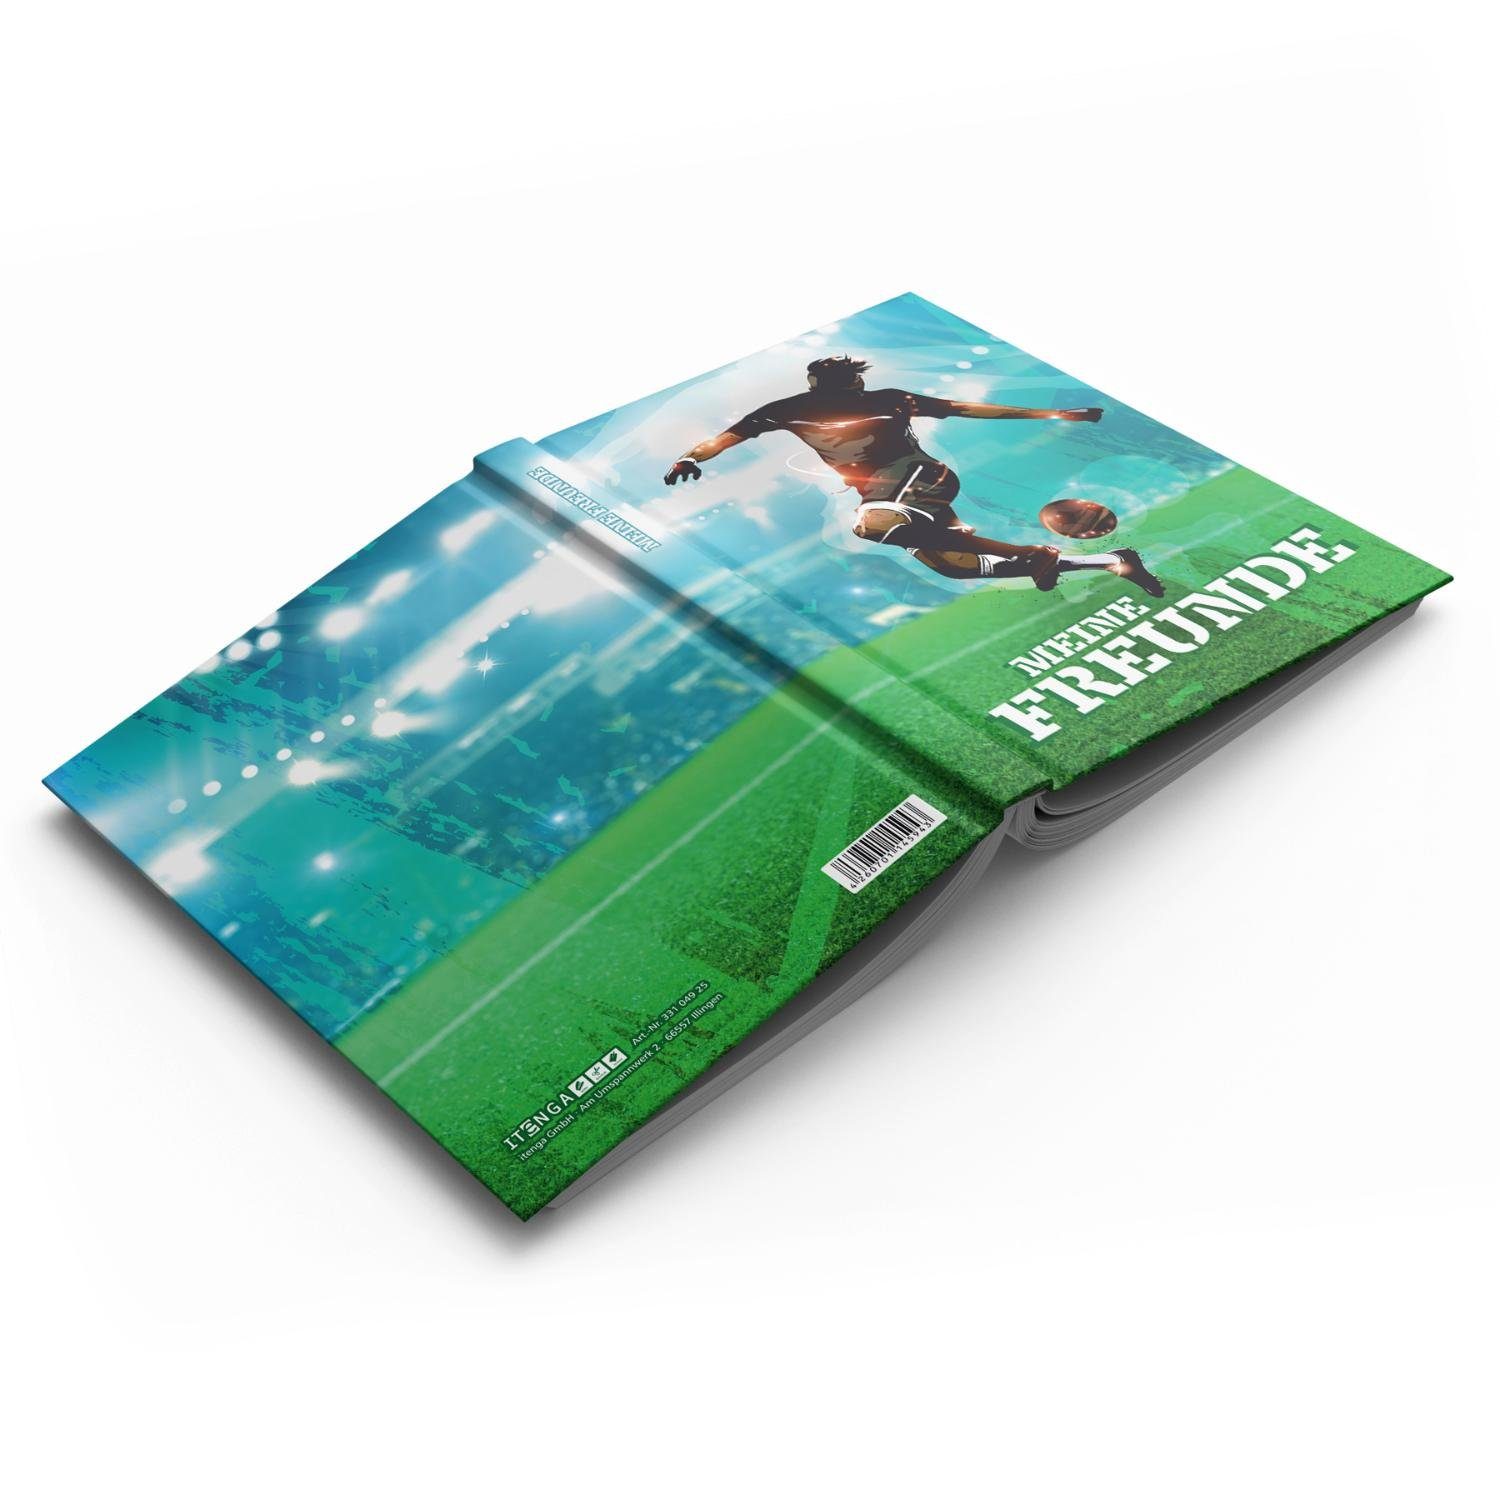 Notizbuch DIN itenga Naturpapier Freundebuch A5, 150g 88 itenga Seiten Fußball